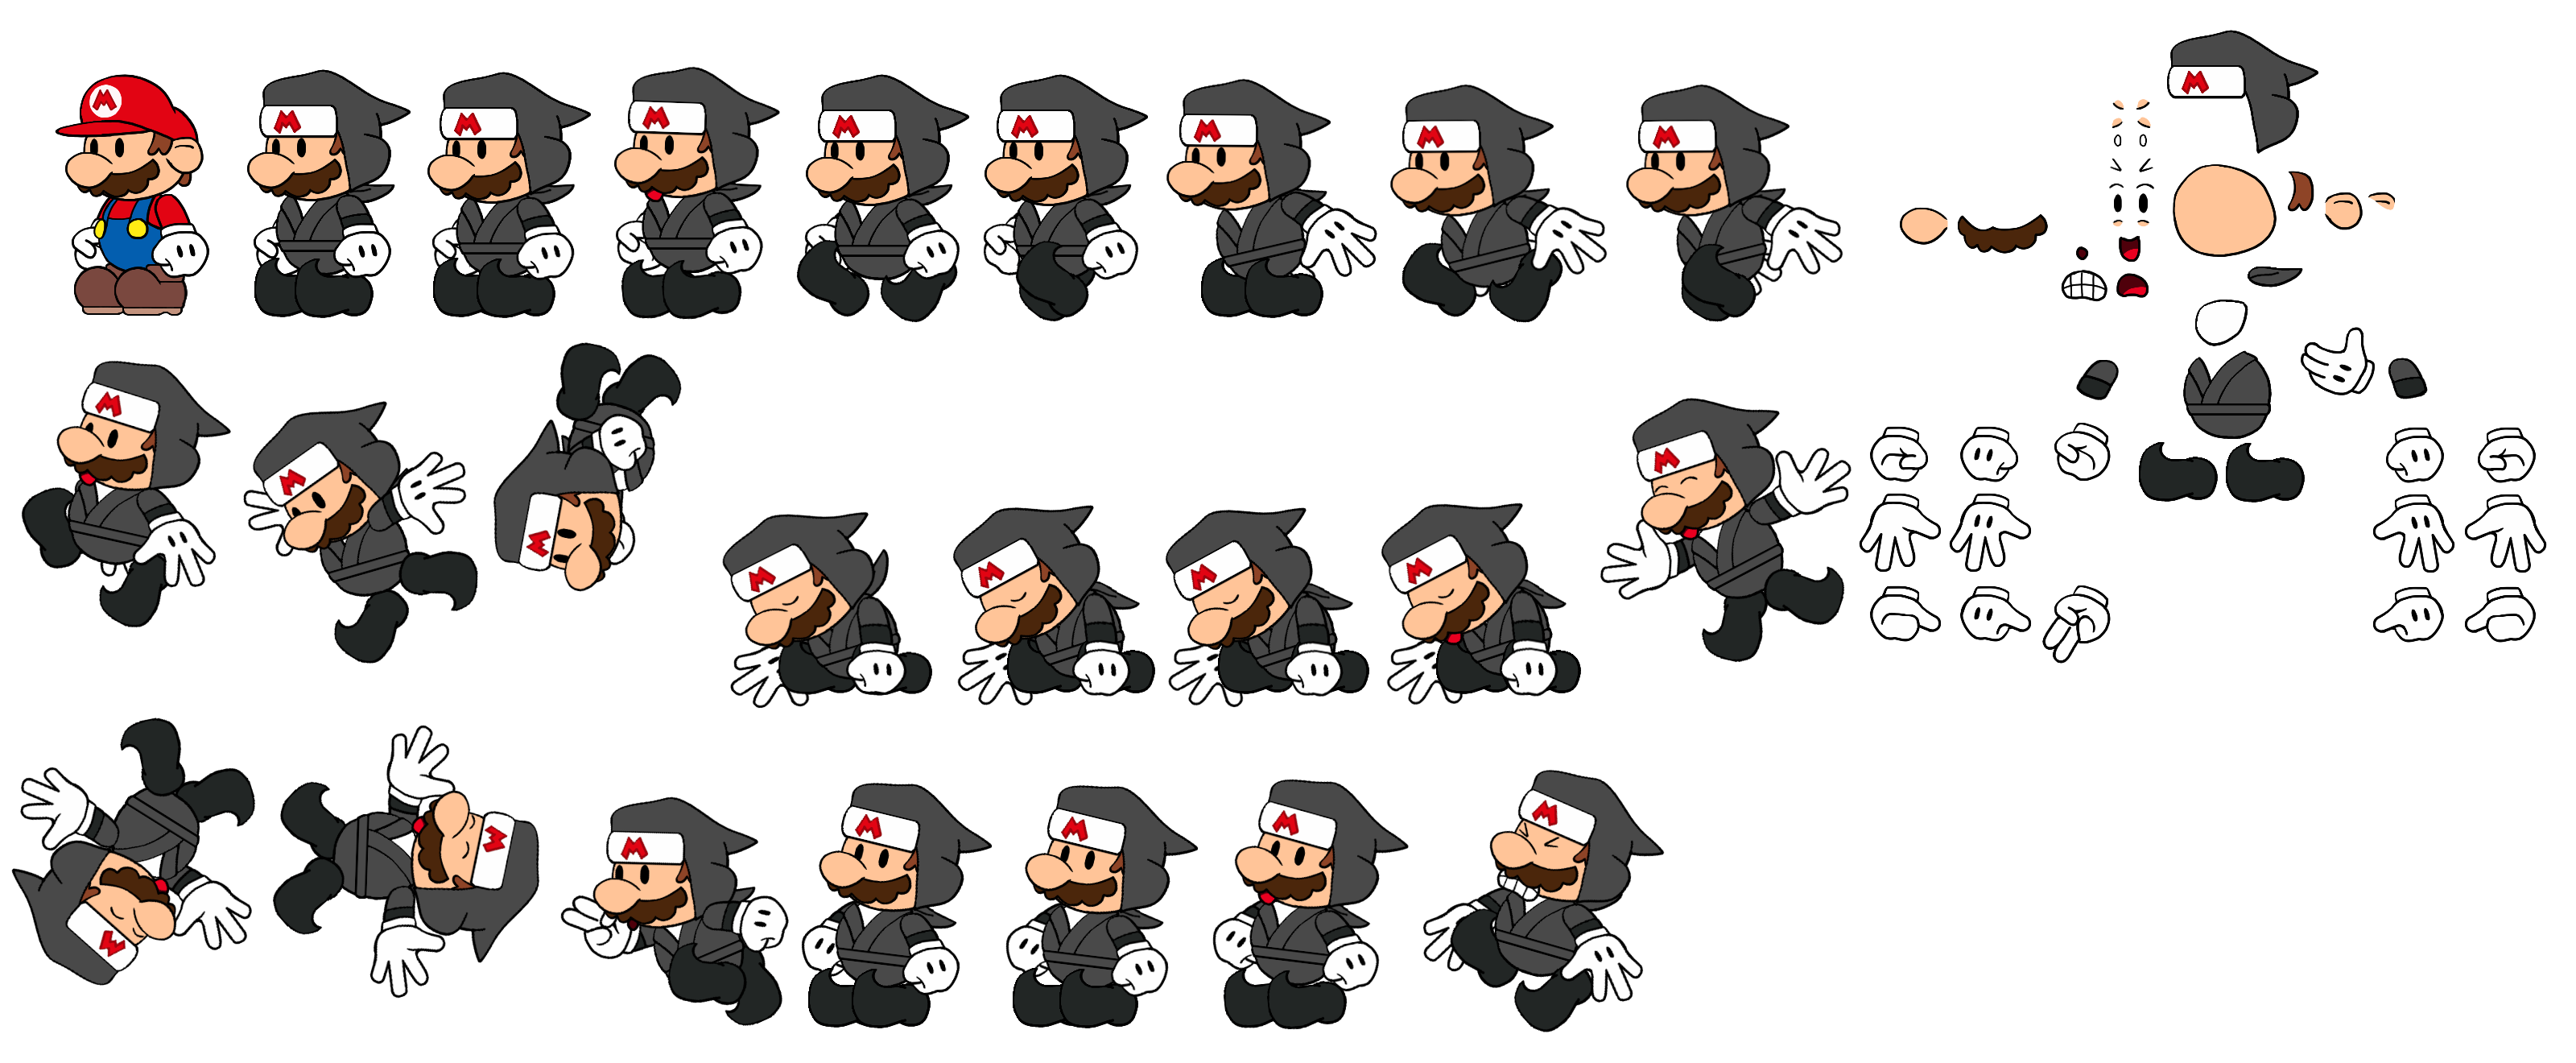 Paper Mario Customs - Mario (TOK Ninja Outfit) (Paper Mario-Style)